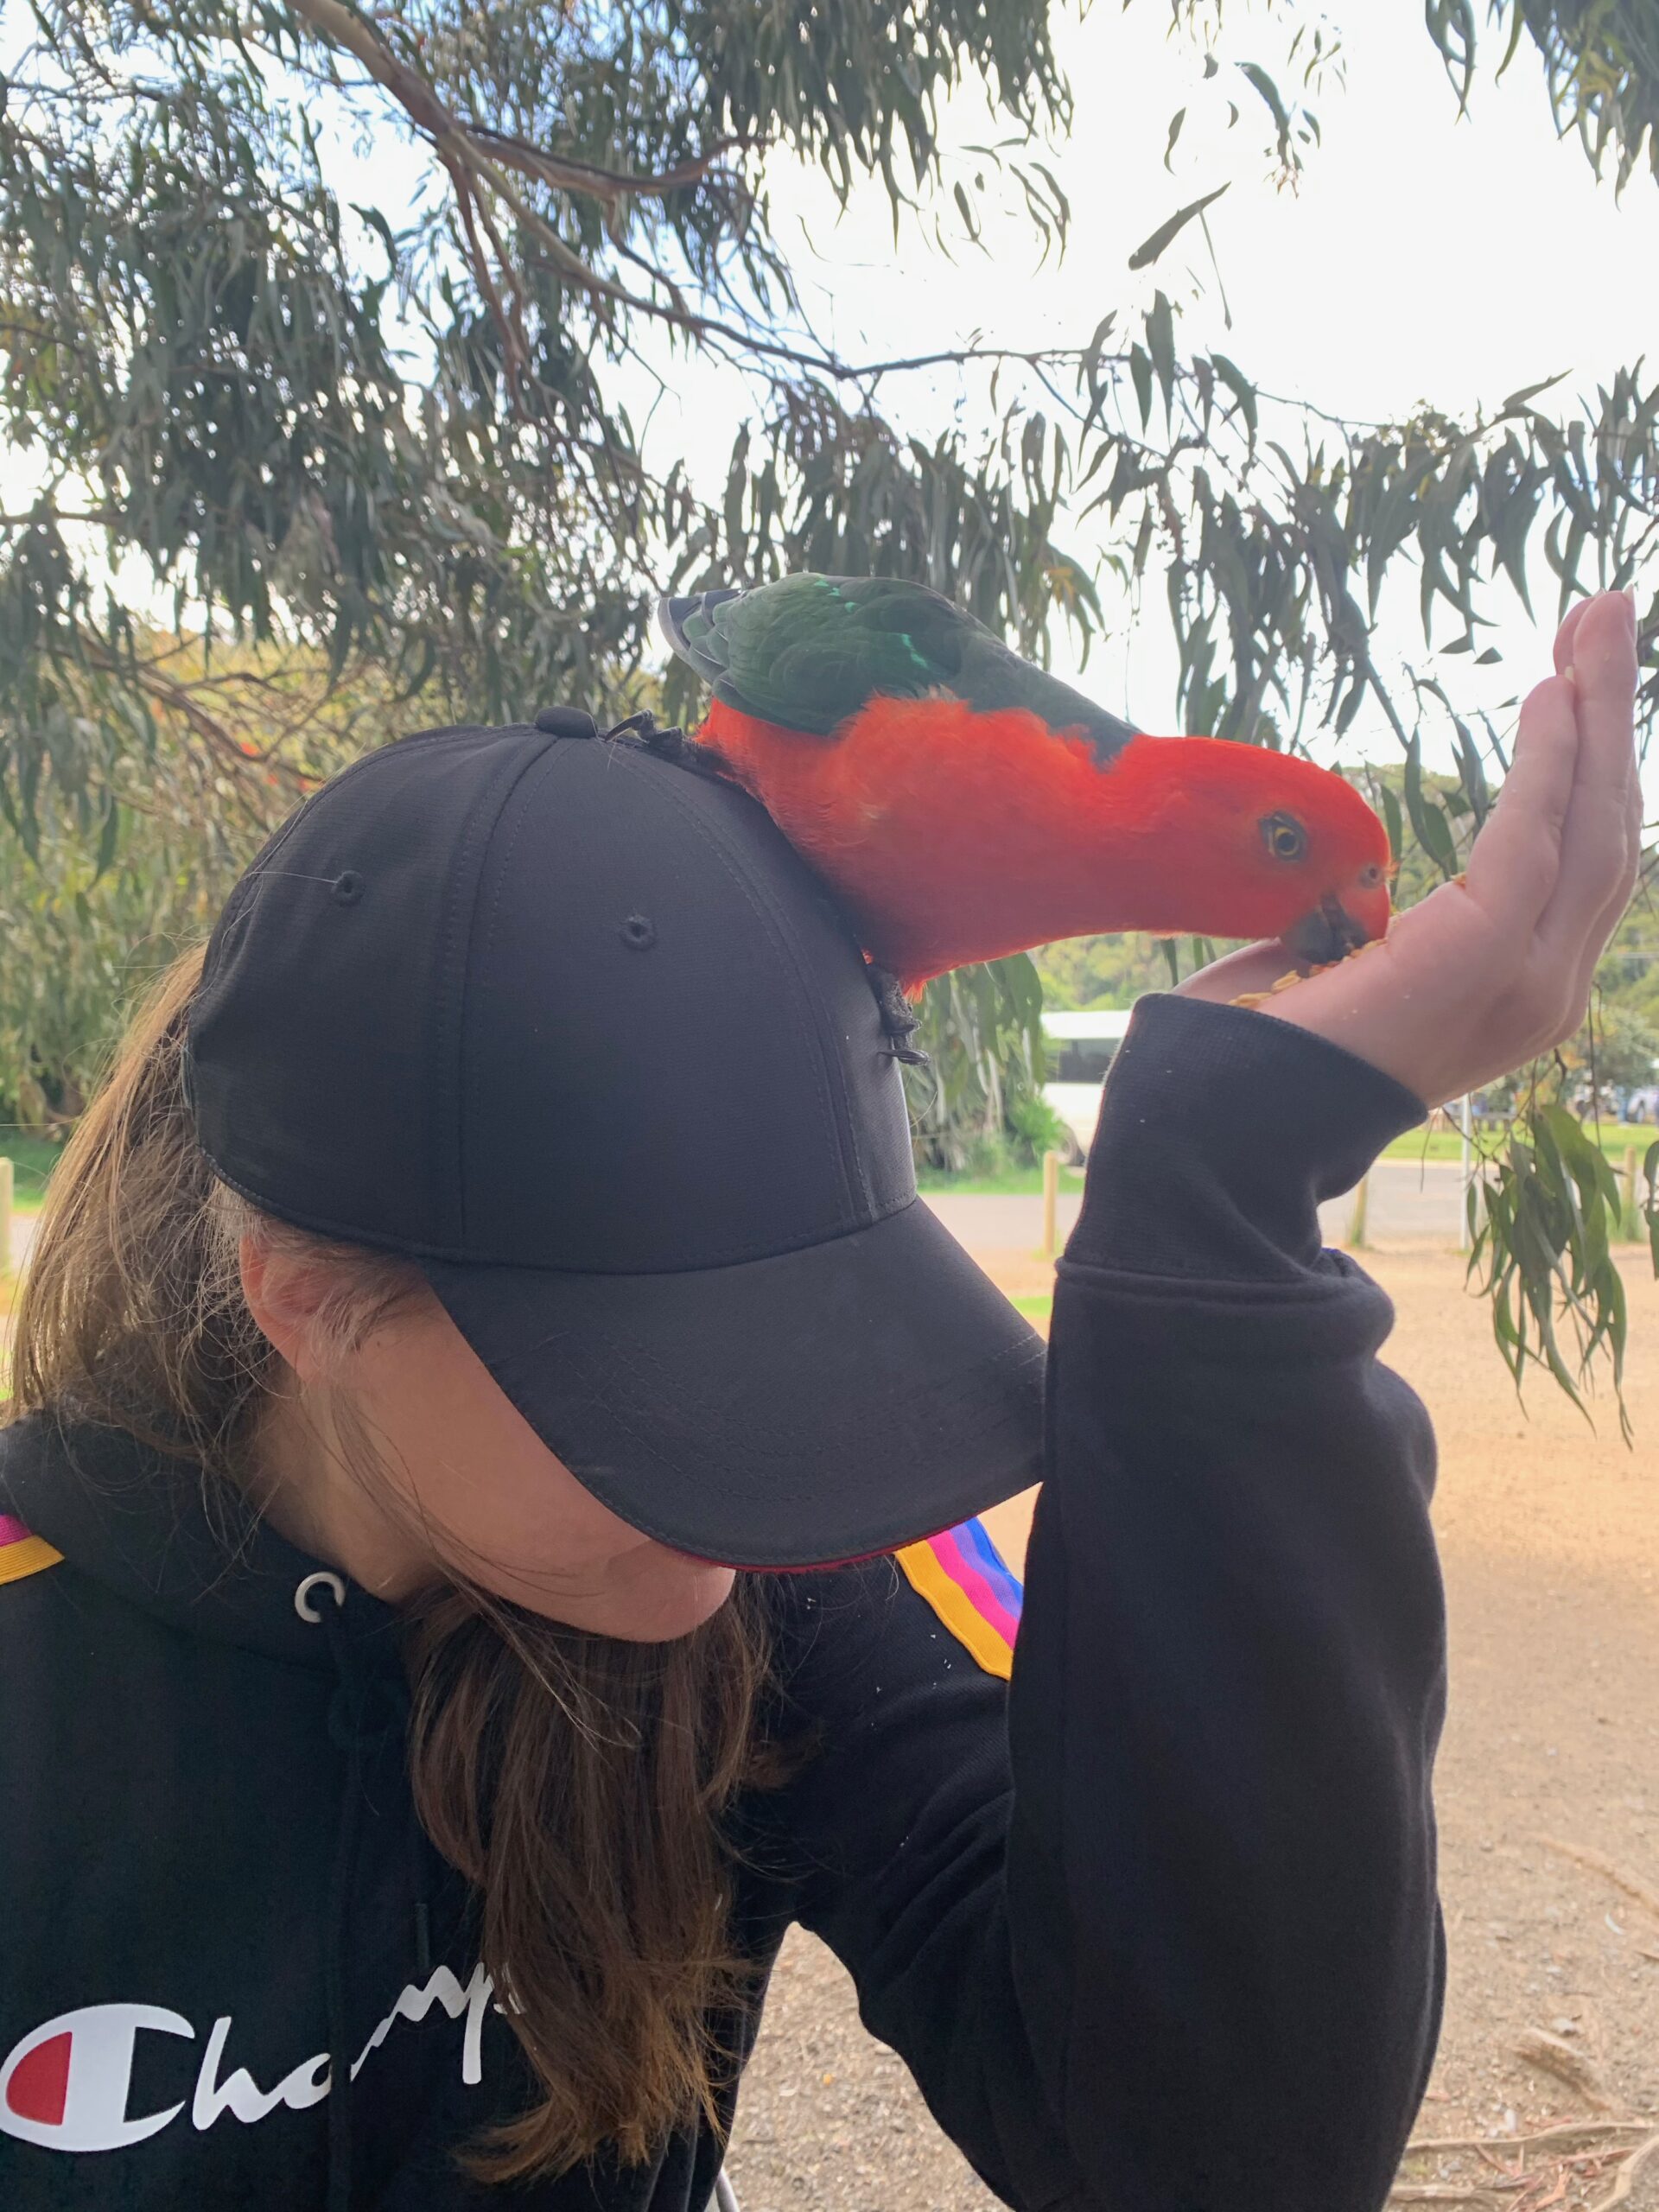 Bild: Auf meinem Kopf sitzt ein Papagei und frisst aus meiner Hand, Australien